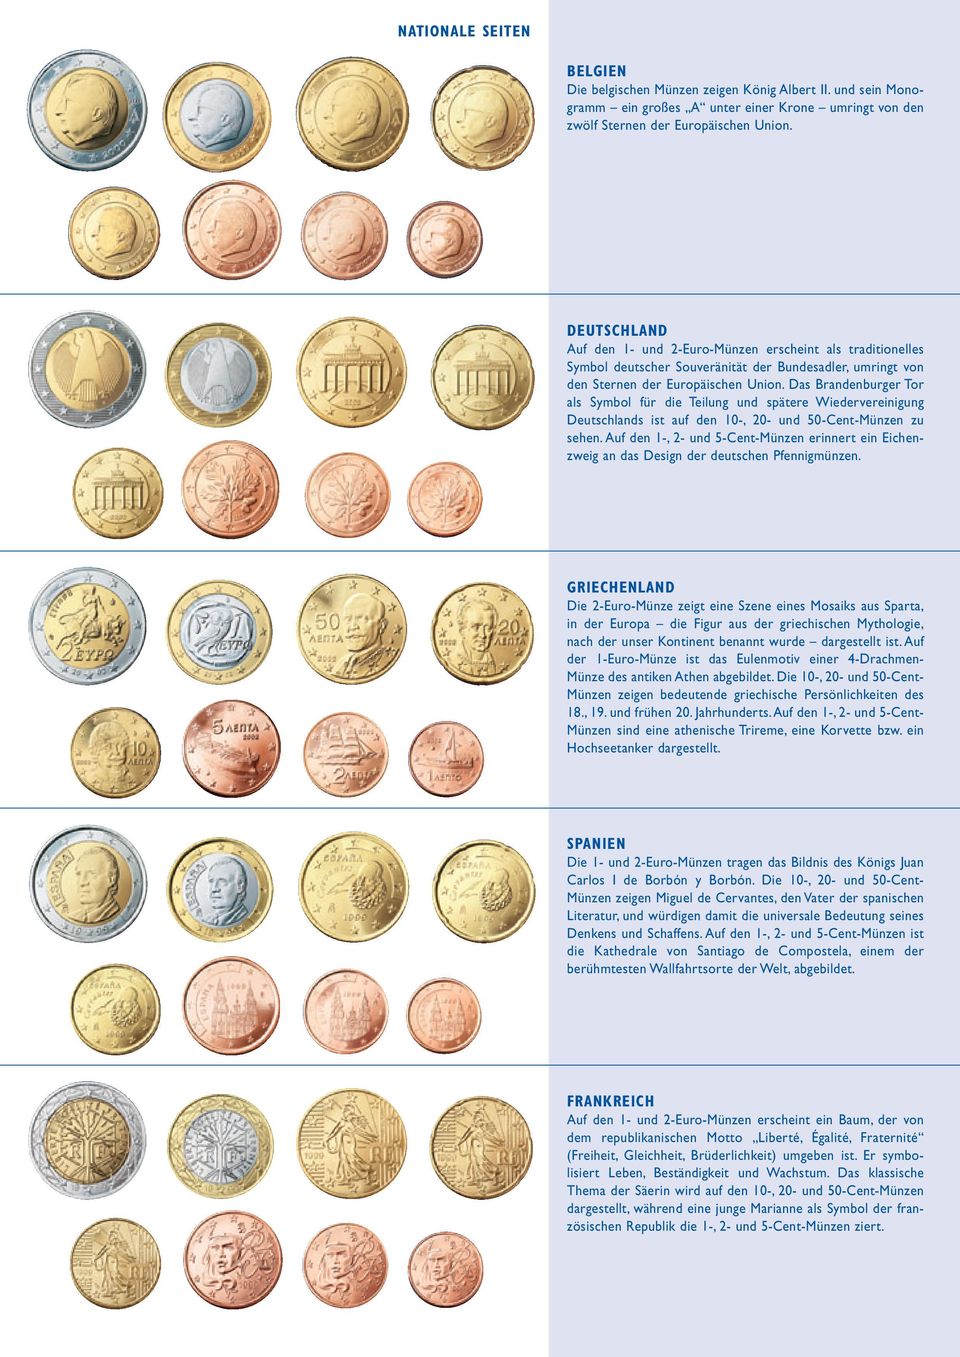 Das Brandenburger Tor als Symbol für die Teilung und spätere Wiedervereinigung Deutschlands ist auf den 10-, 20- und 50-Cent-Münzen zu sehen.